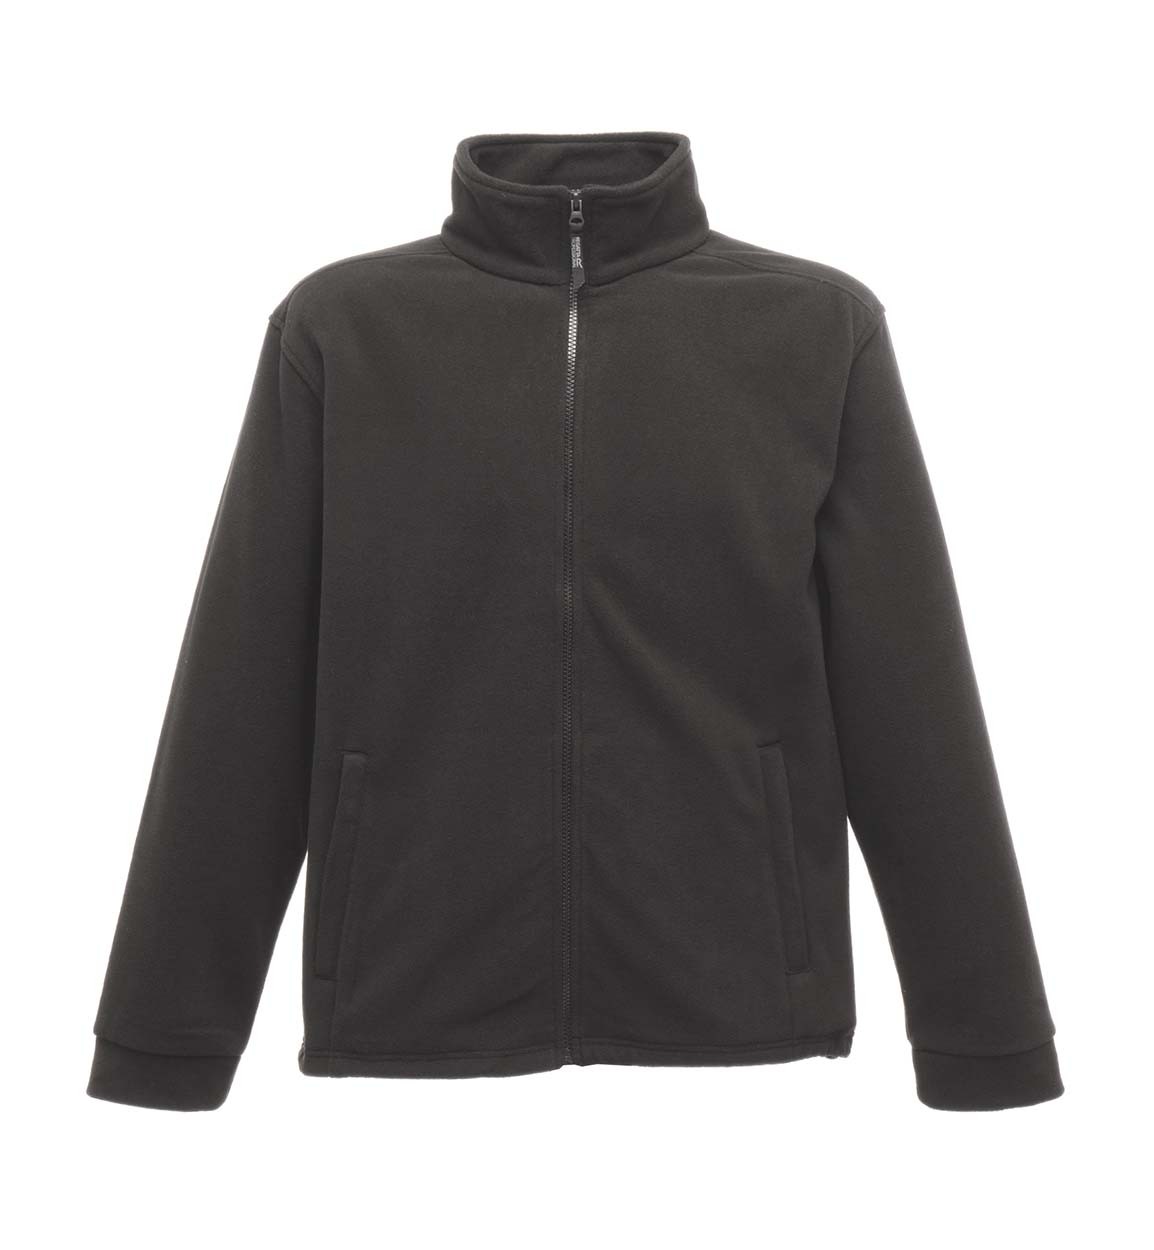 Regatta Professional TRF570 Classic Fleece - Mens / Unisex Fleece Jackets -  Fleece Jackets - Fleeces - Leisurewear - Best Workwear